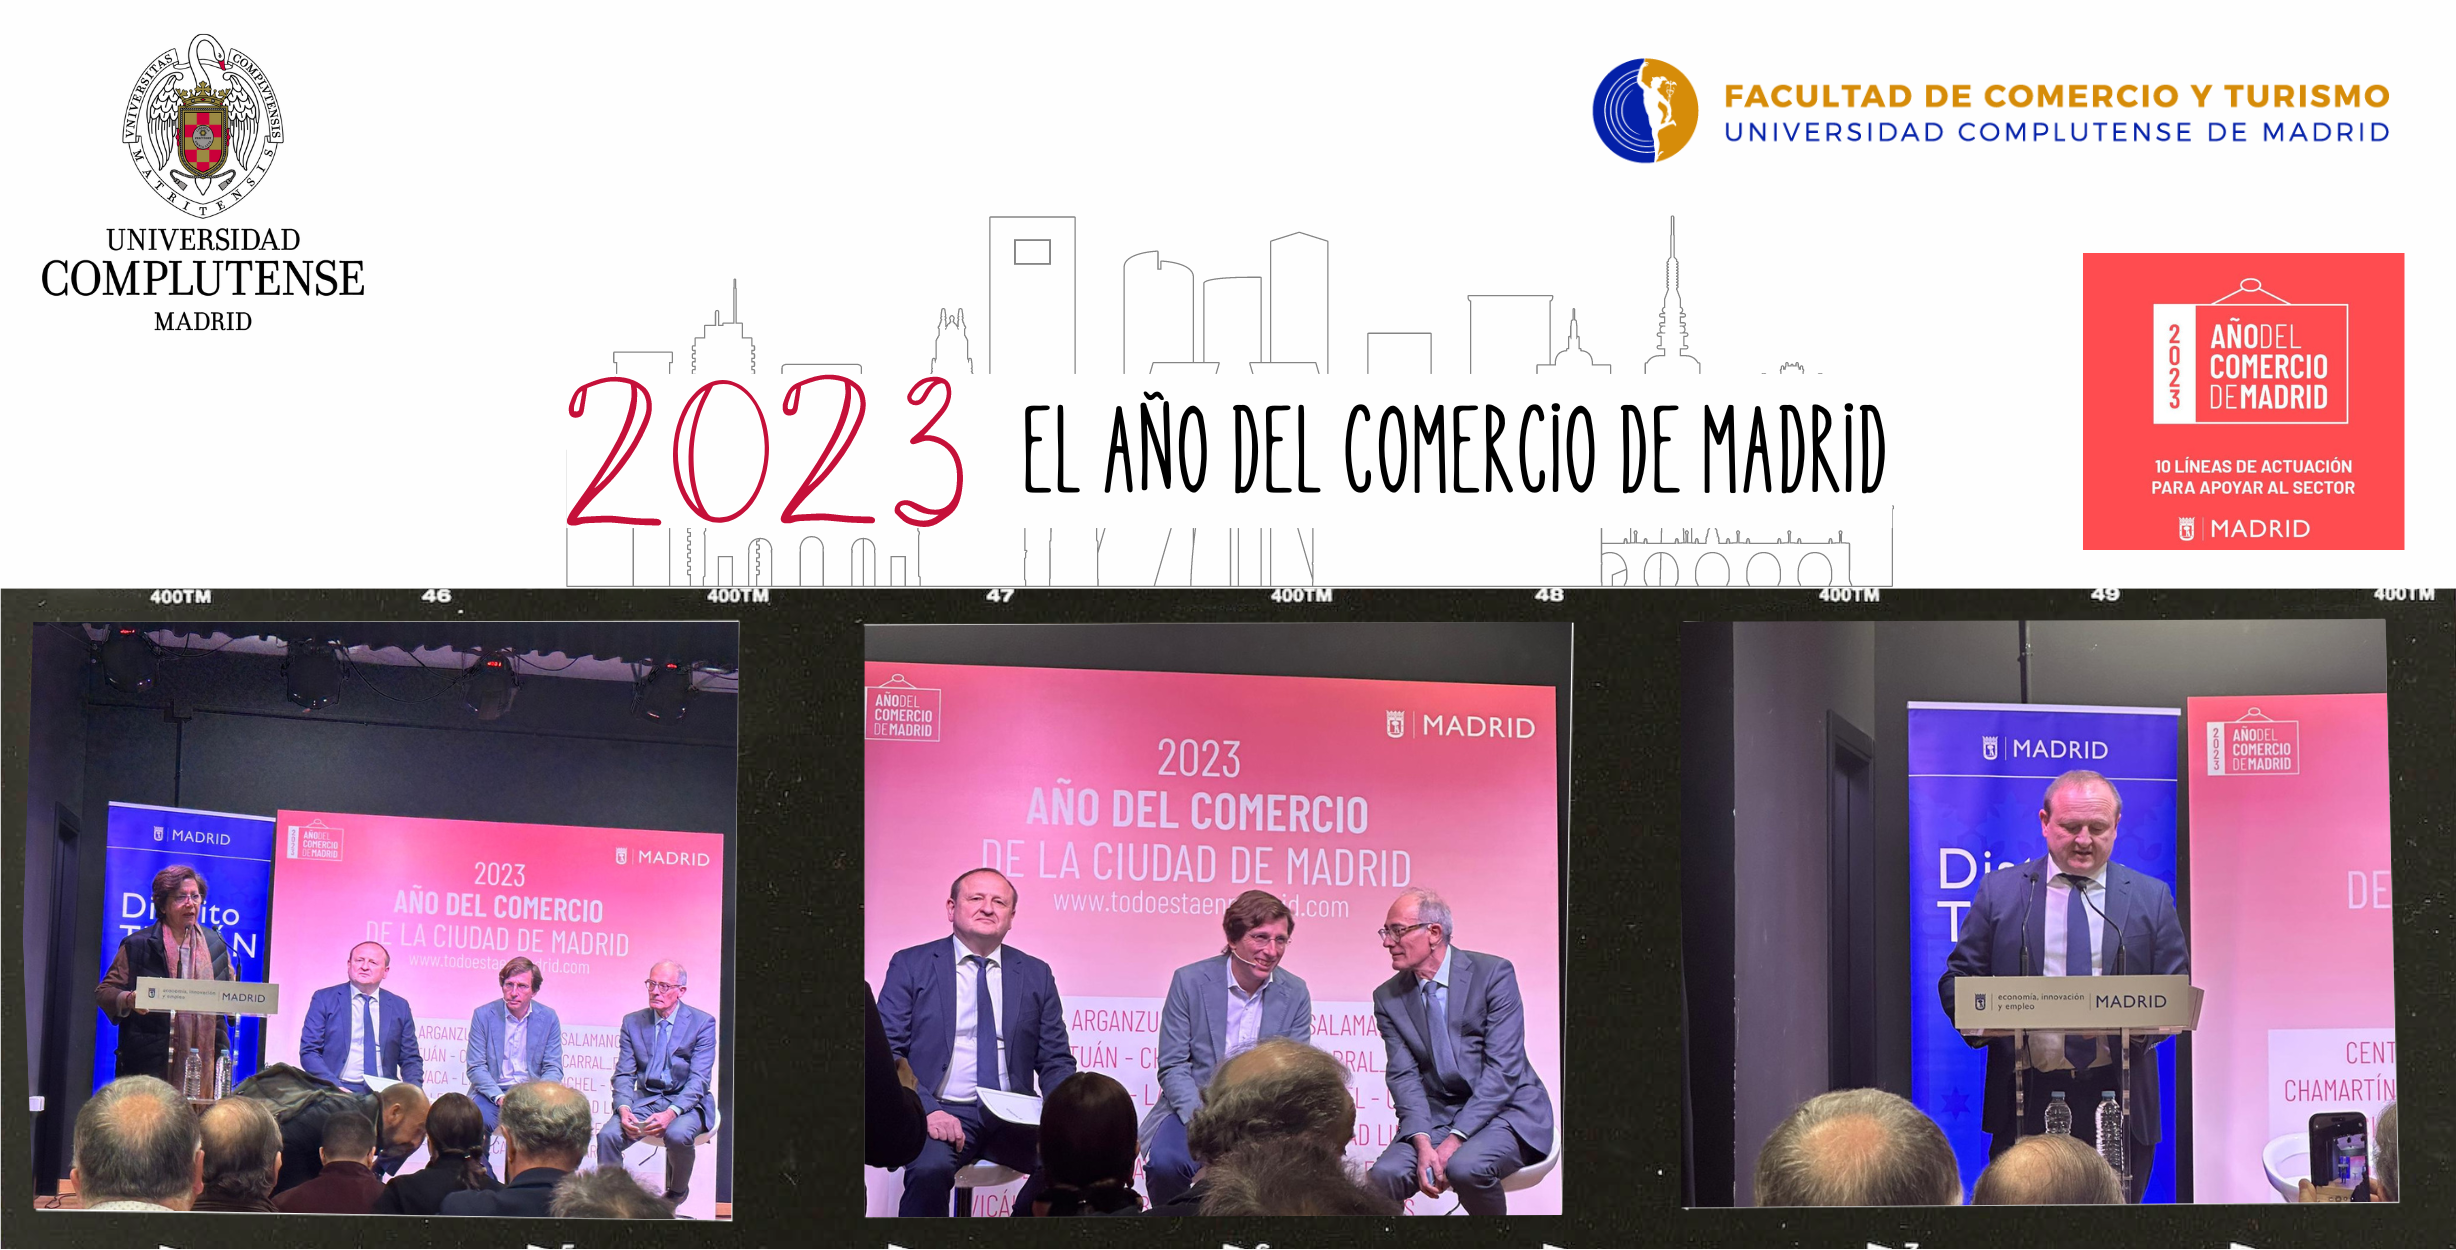 2023 El año del Comercio de Madrid